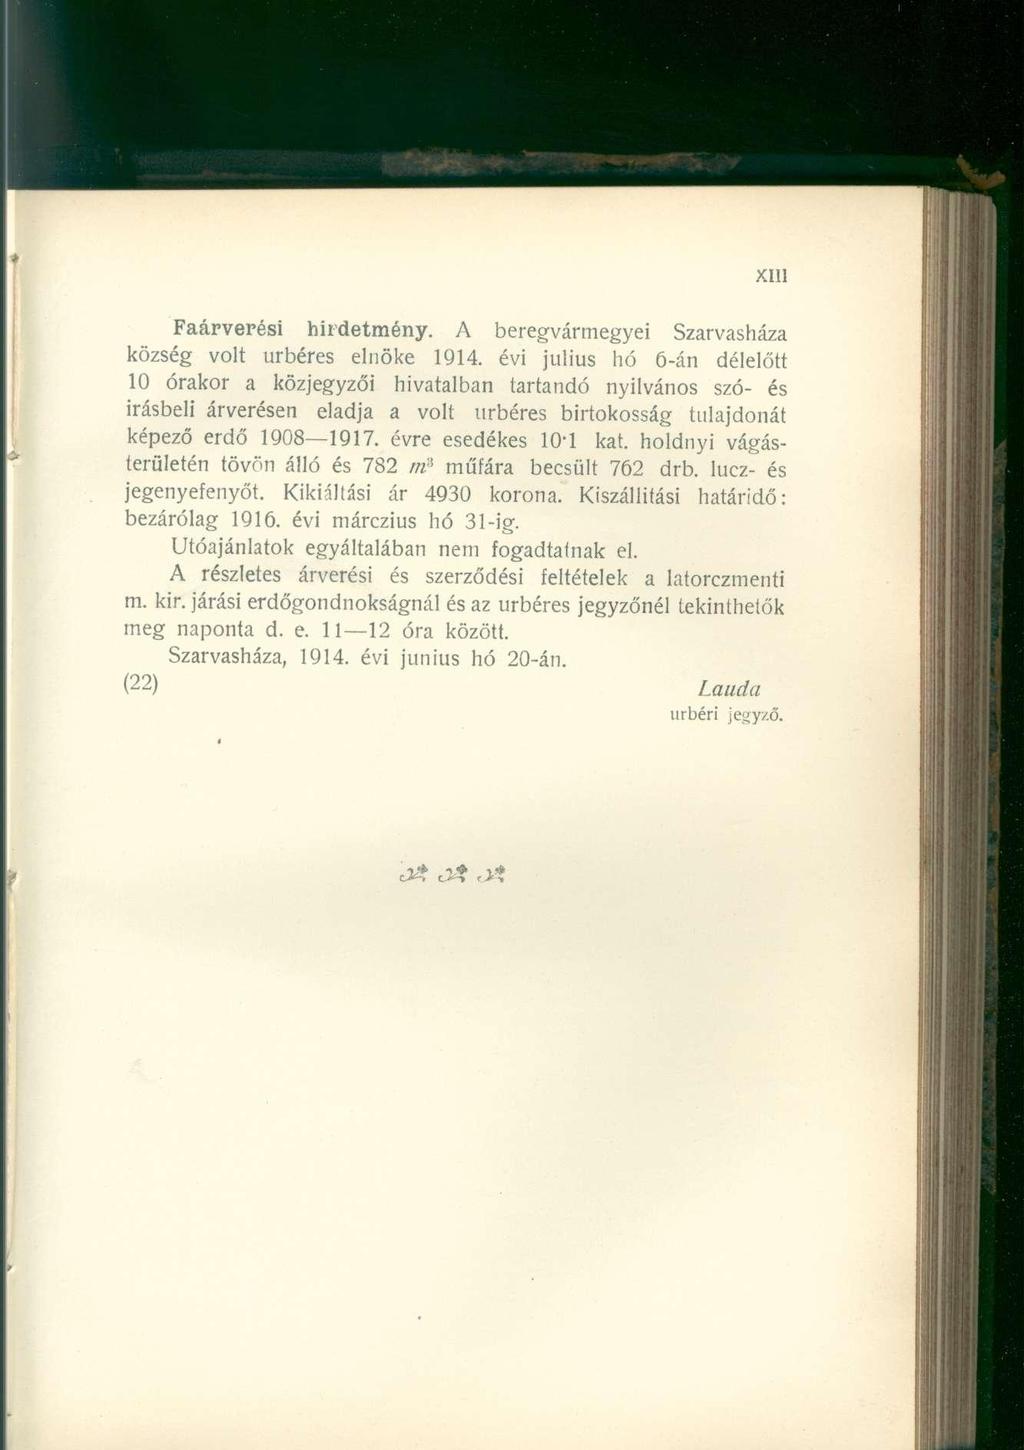 Faárverési hirdetmény. A beregvármegyei Szarvasháza község volt úrbéres elnöke 1914.